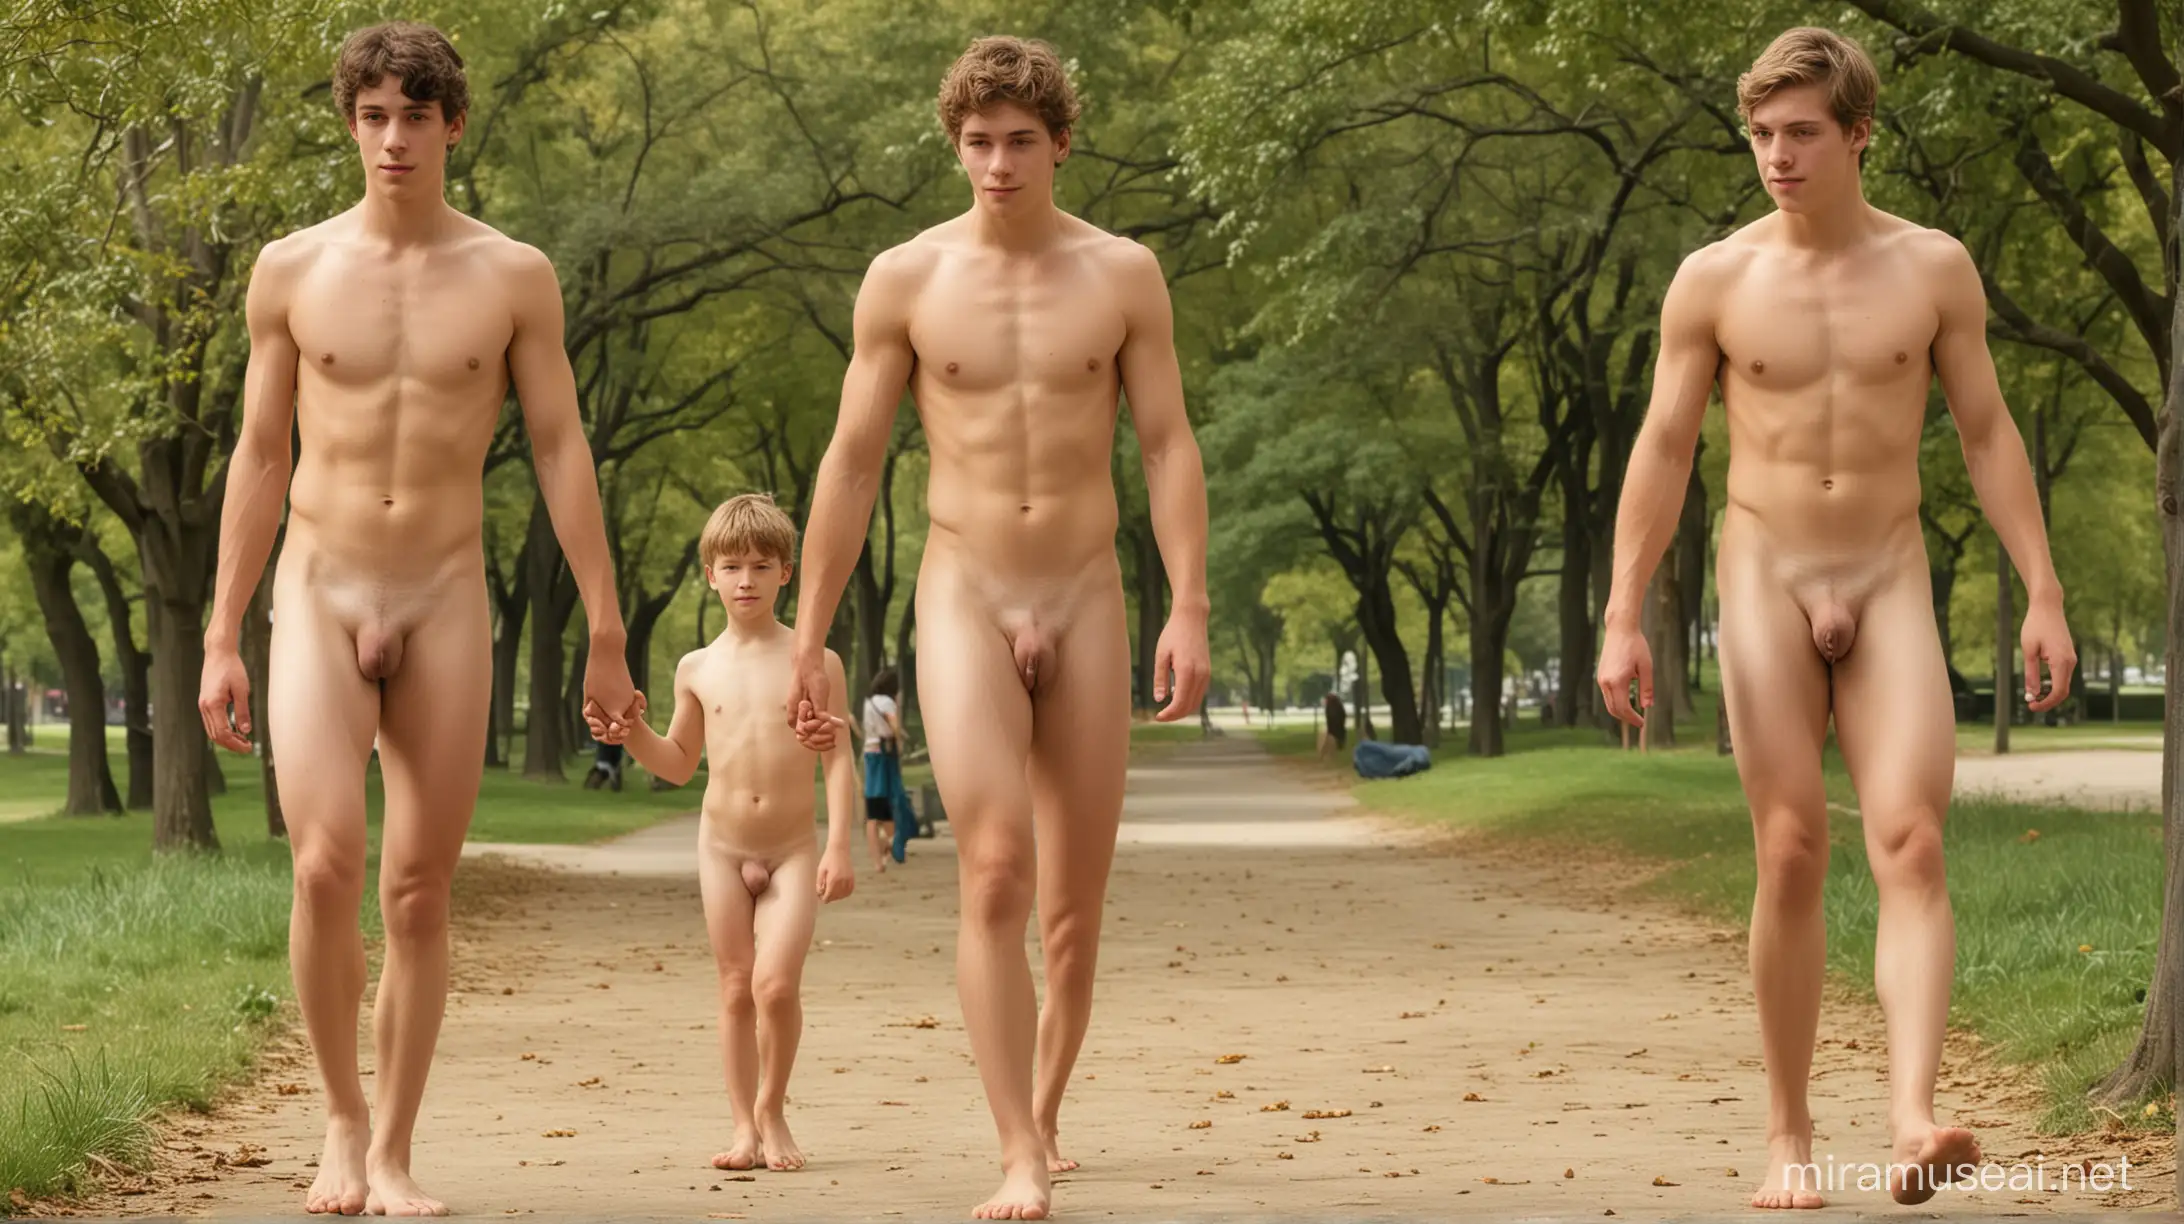 Em um parque ensolarado e movimentado, três rapazes nus e descalços, 18 anos, com corpos bem definidos mostrados por inteiro, passeiam com cachorro dinamarquês.